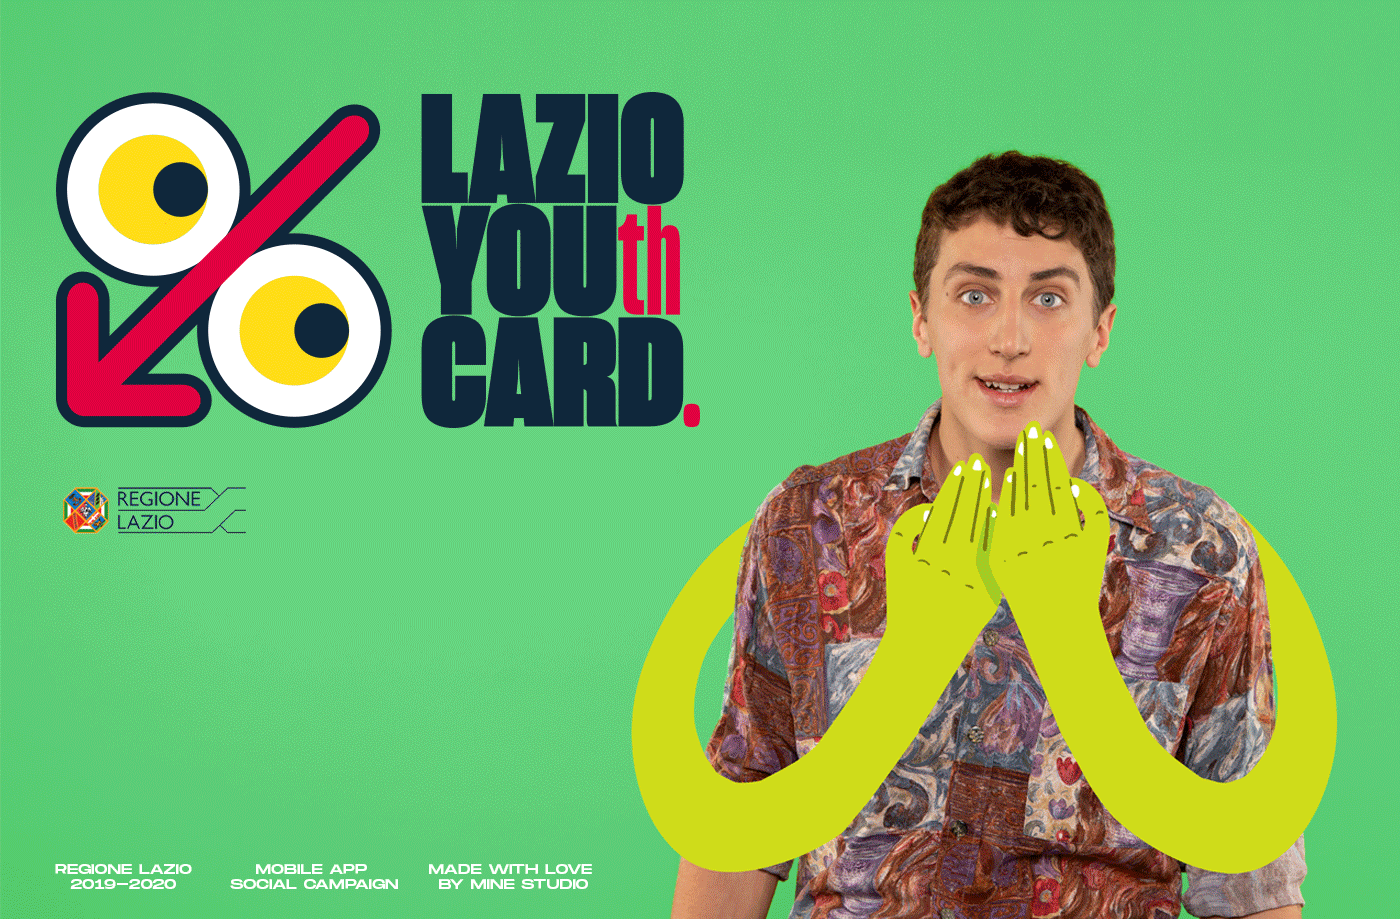 card digital emotion hand Lazio Pop Art regione Young